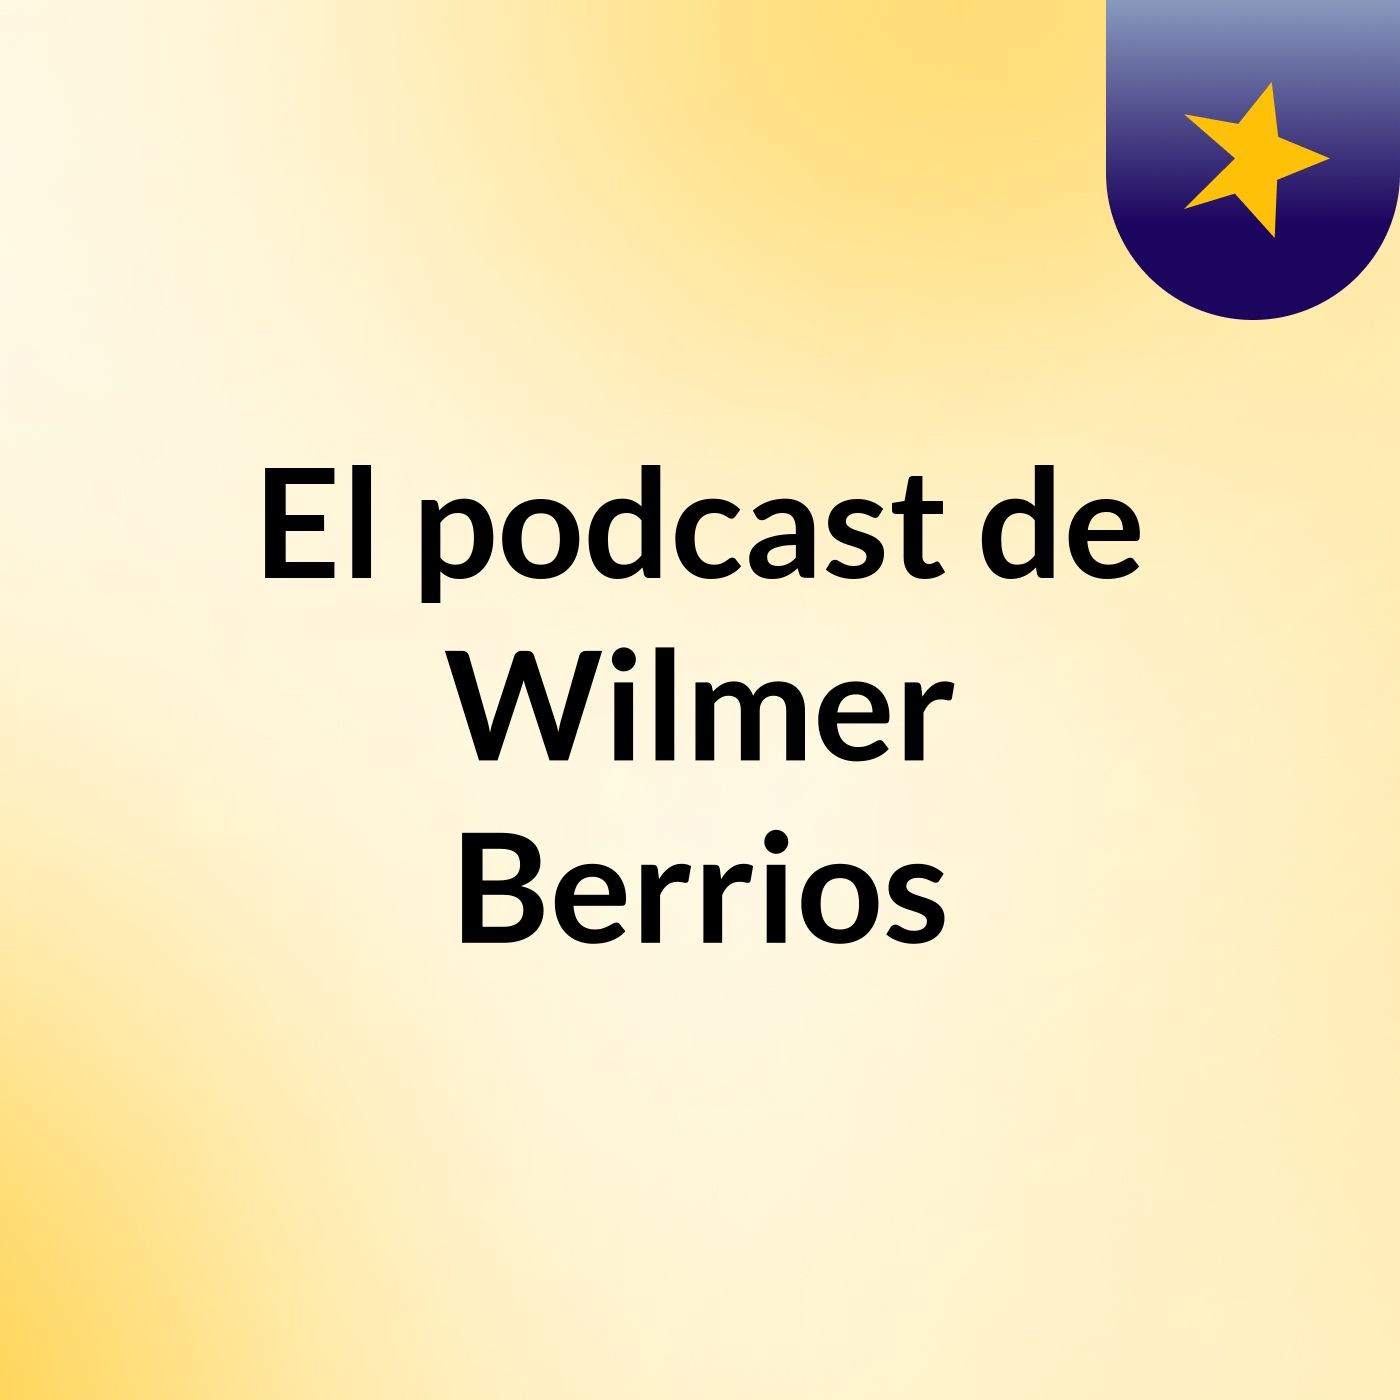 Episodio 2 - El podcast de Wilmer Berrios